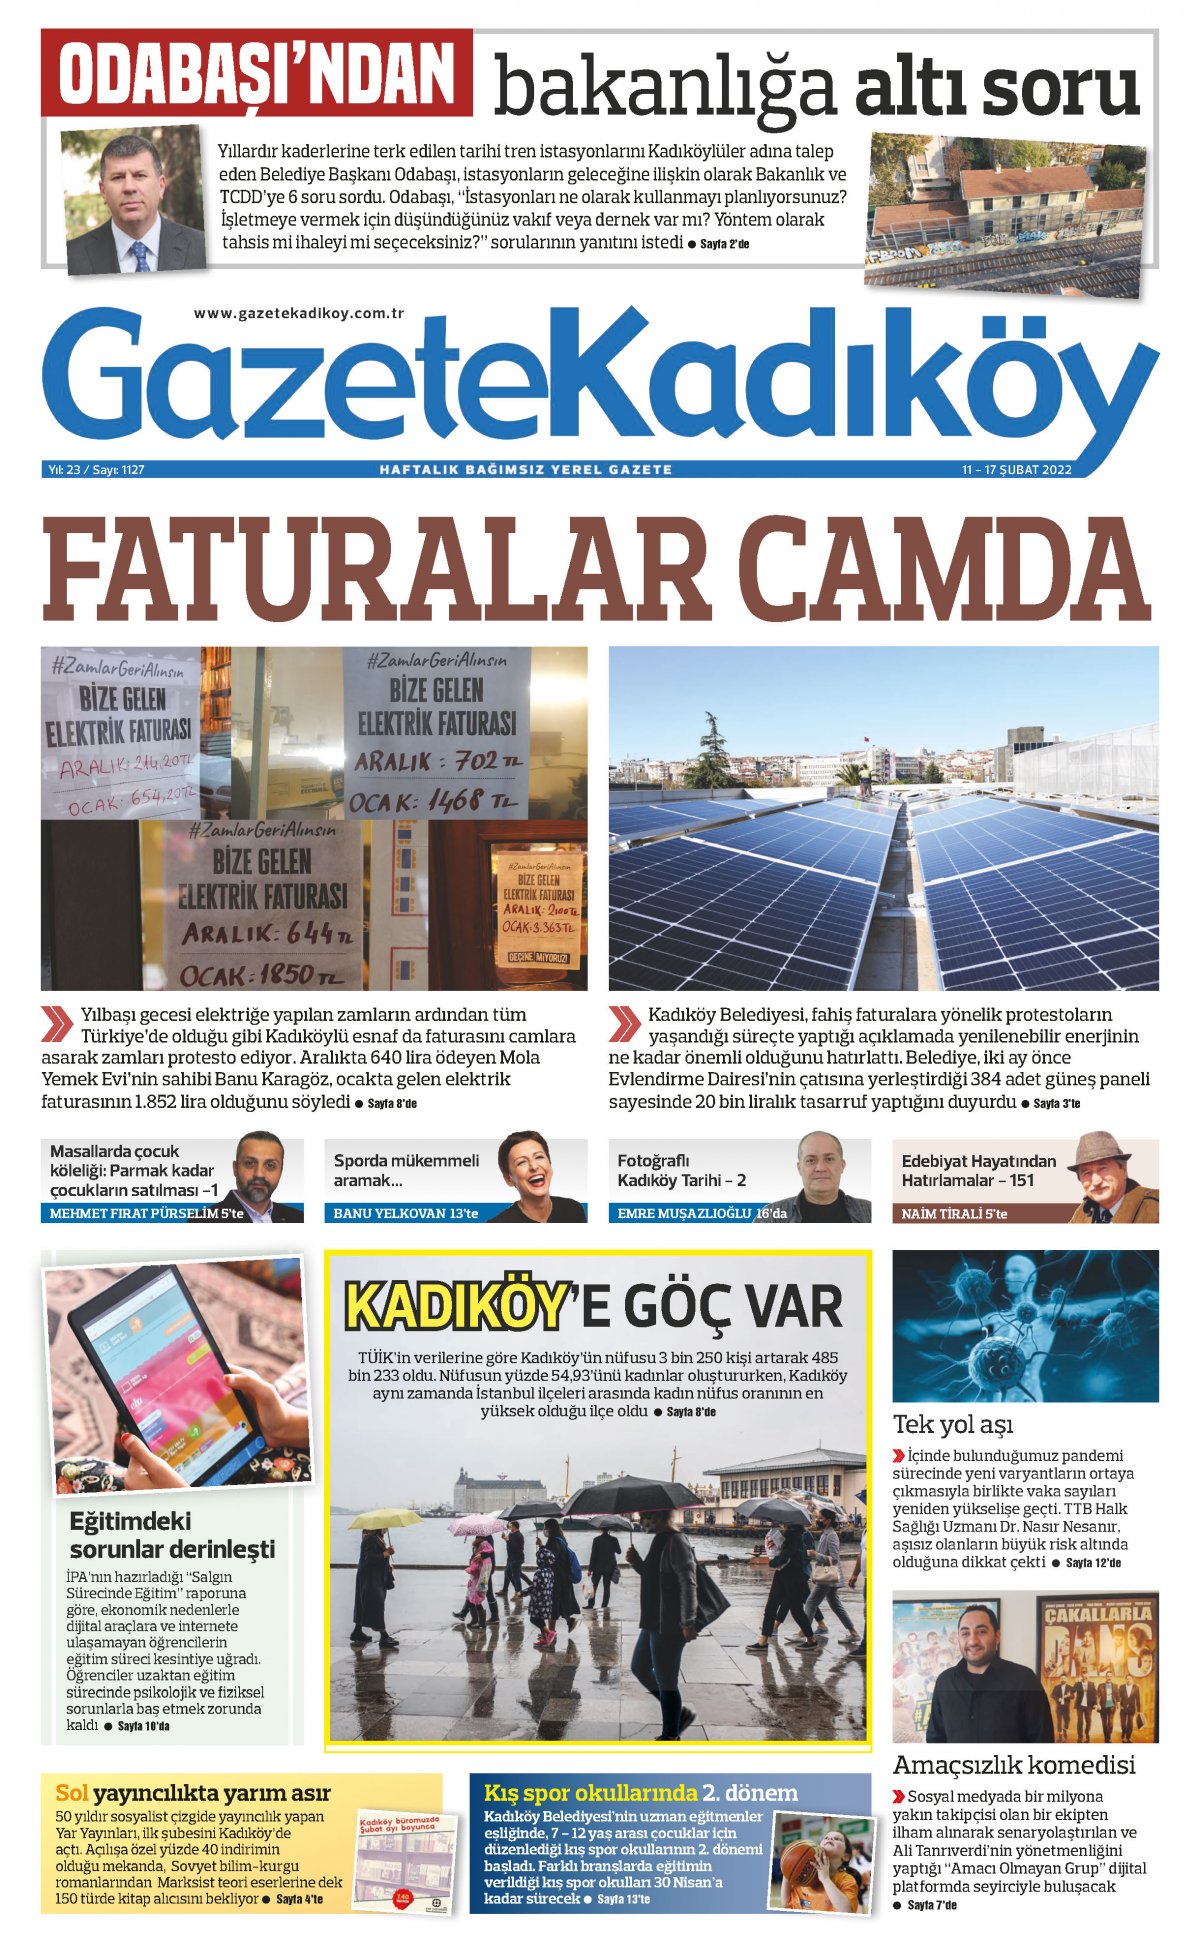 Gazete Kadıköy - 1127. sayı